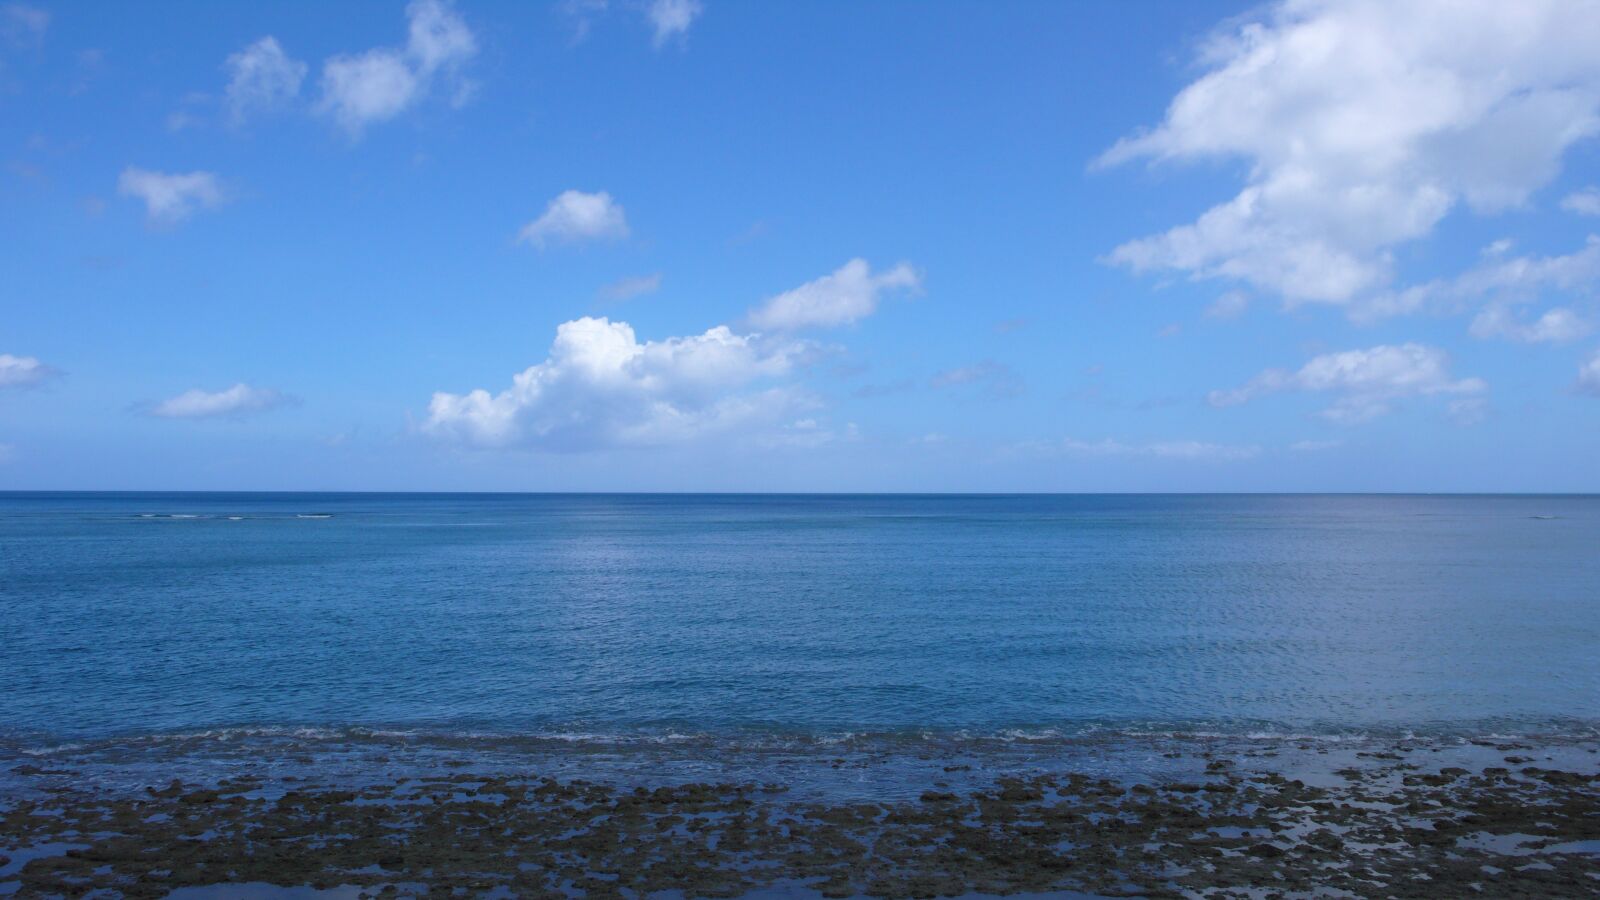 Panasonic DMC-LX2 sample photo. Sea, sky, sunny photography